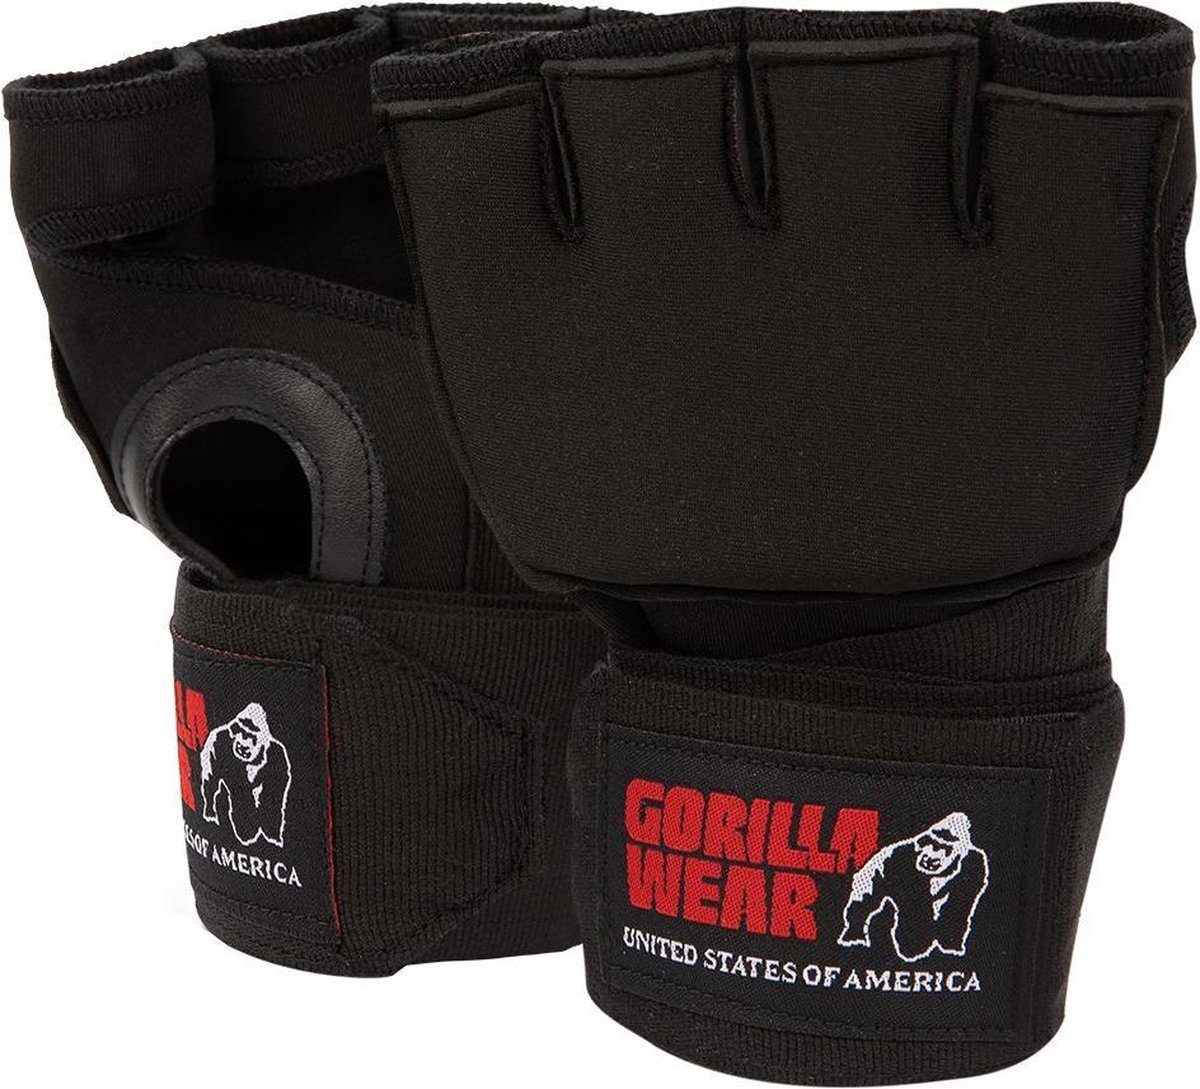 Gorilla Wear Gel Handschoen Boksen - Bandage - Binnenhandschoen - S/M